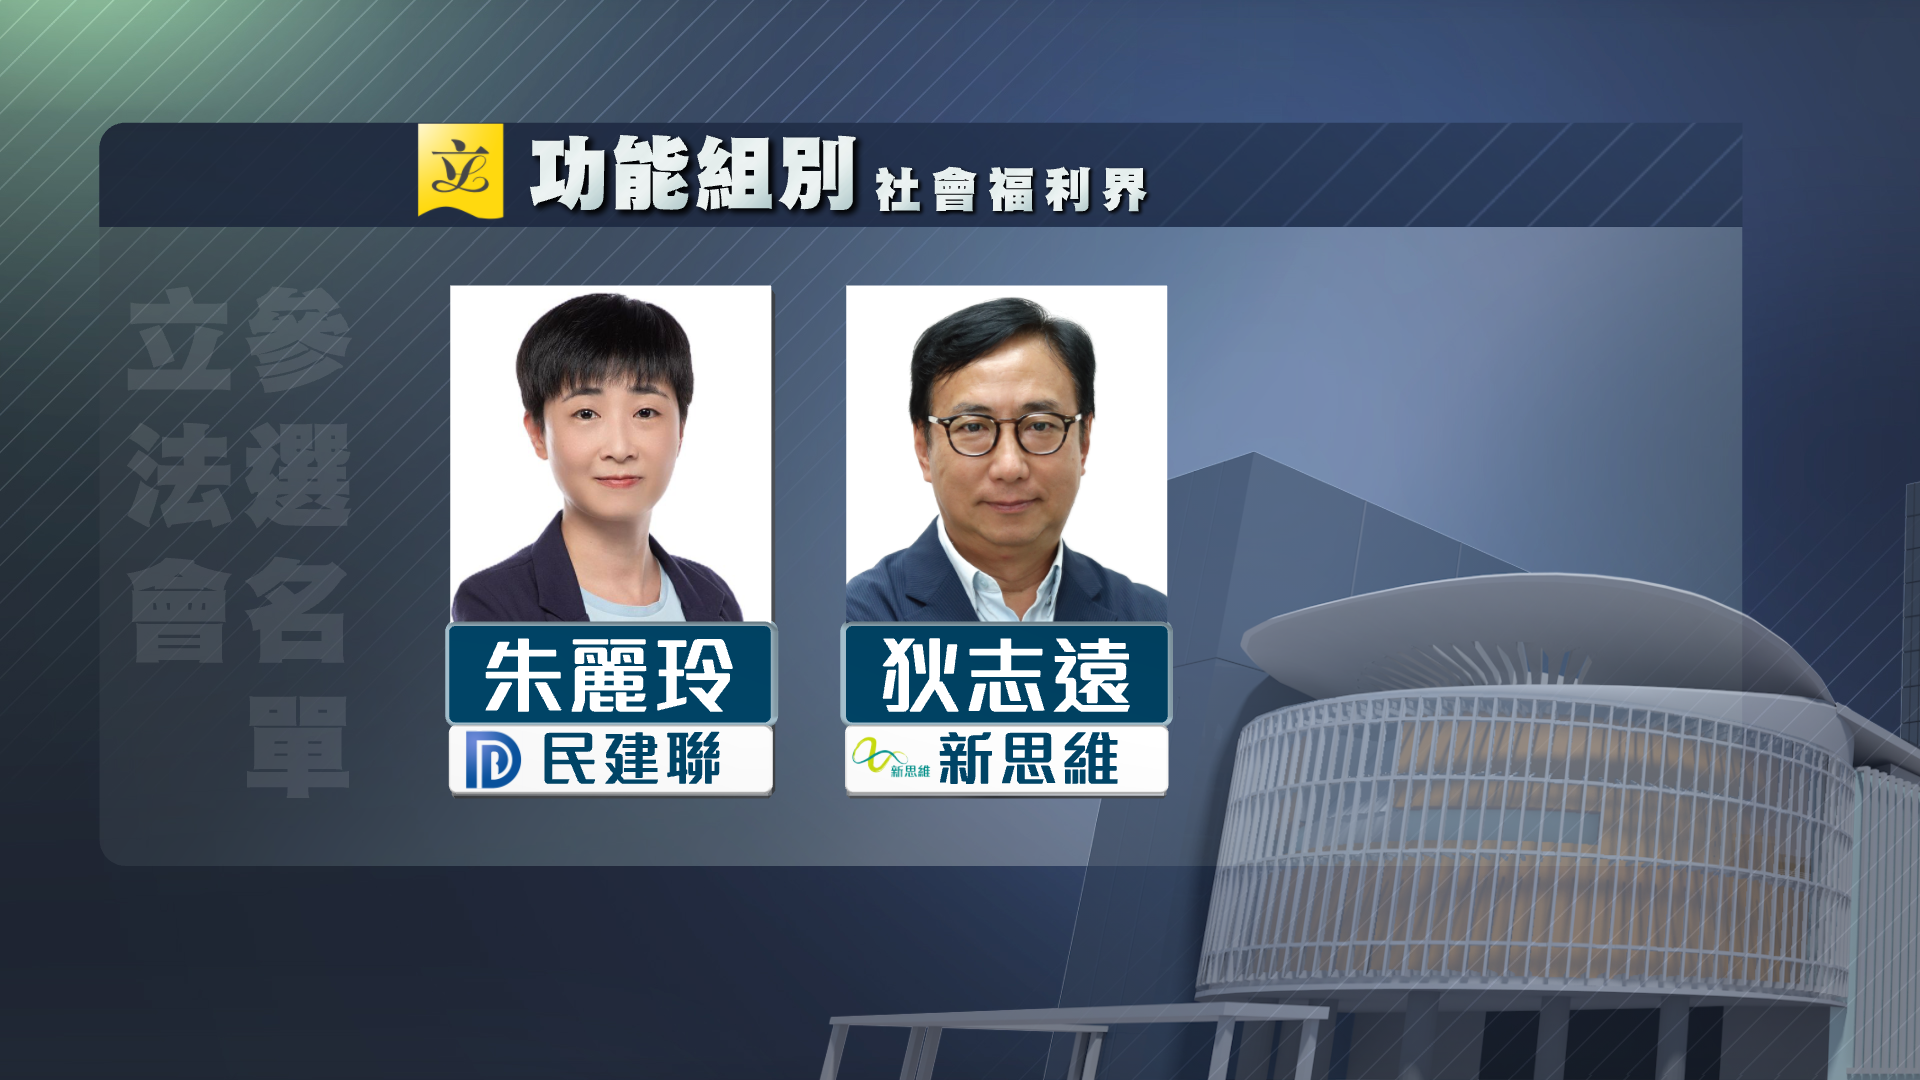 【附名單】立法會選舉今日接獲11人報名